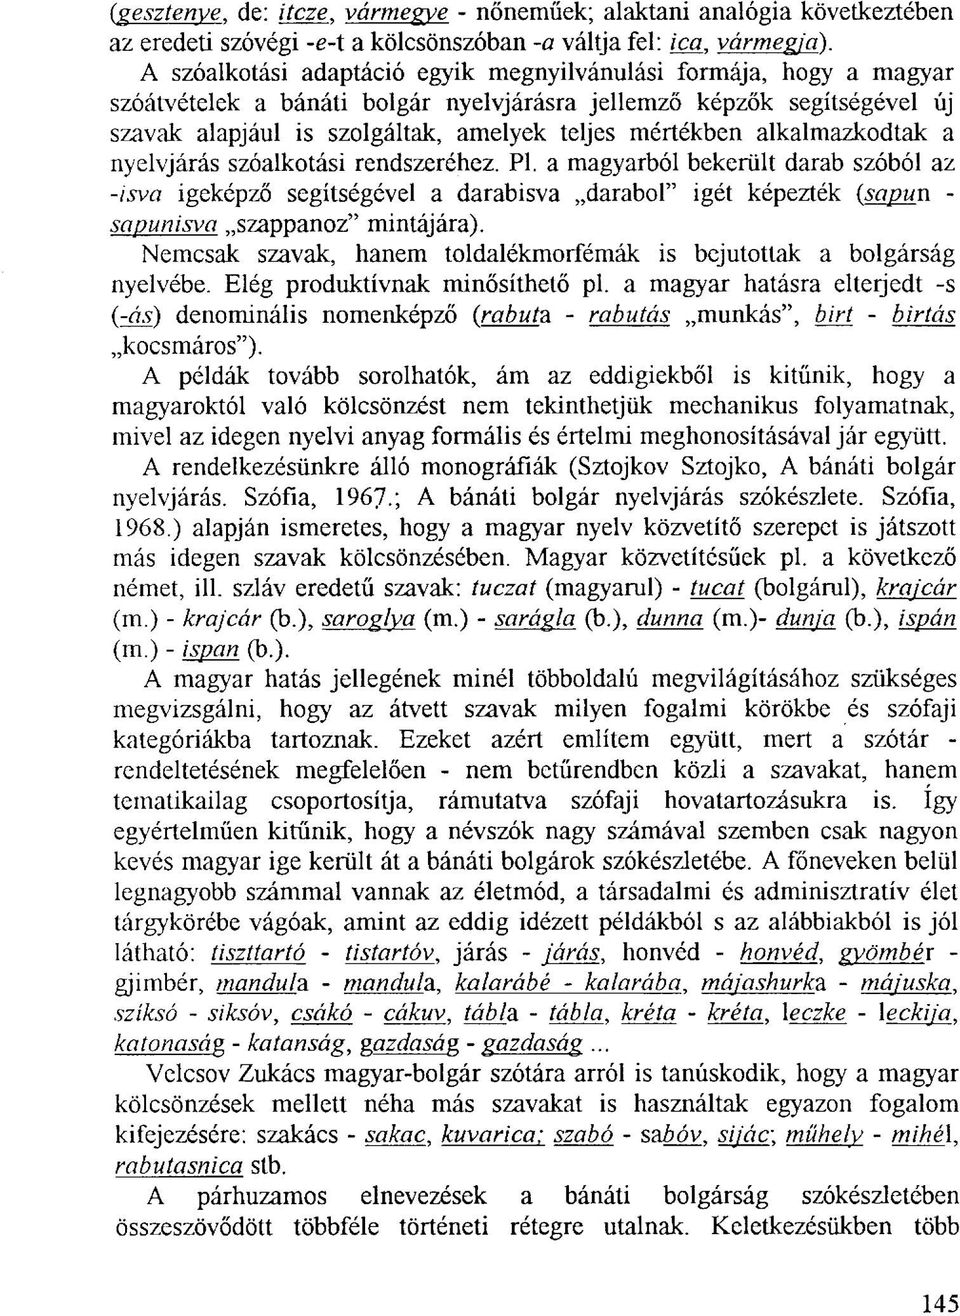 alkalmazkodtak a nyelvjárás szóalkotási rendszeréhez. Pl. a magyarból bekerült darab szóból az -isva igeképző segítségével a darabisva darabol" igét képezték (sapun - sapuni sva szappanoz" mintájára).